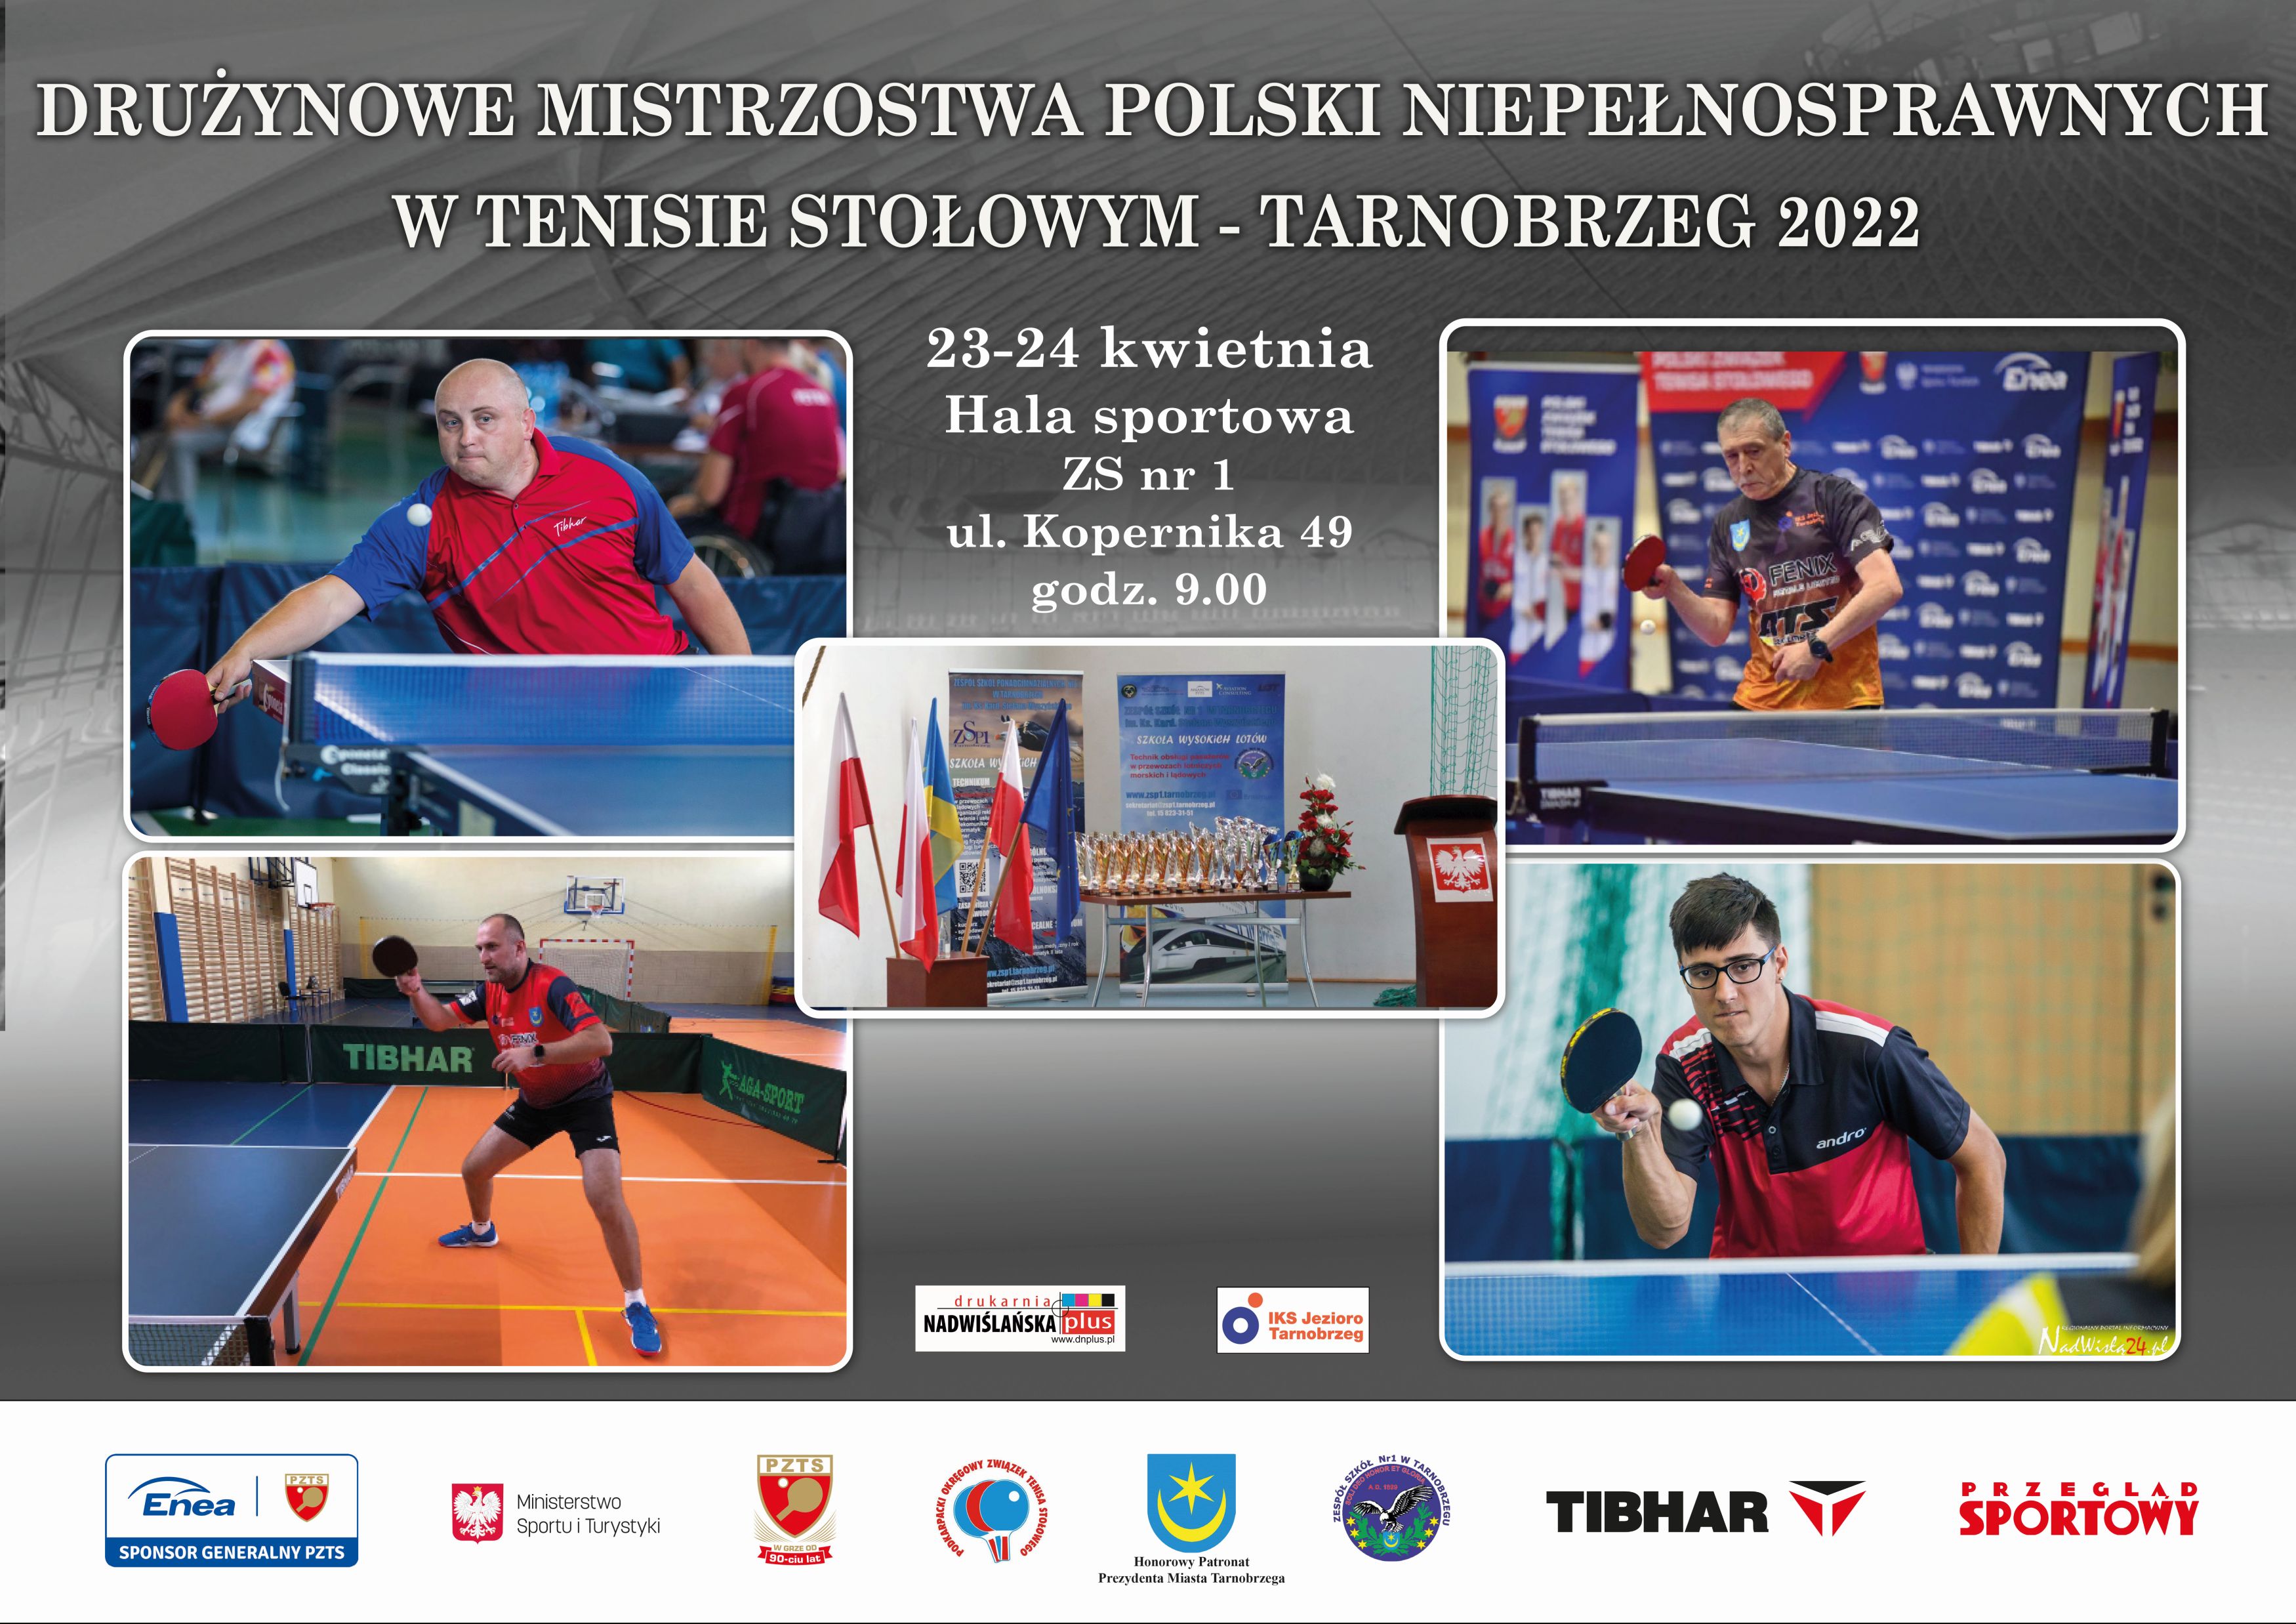 Drużynowe Mistrzostwa Polski Niepełnosprawnych w Tenisie Stołowym - Tarnobrzeg 2022